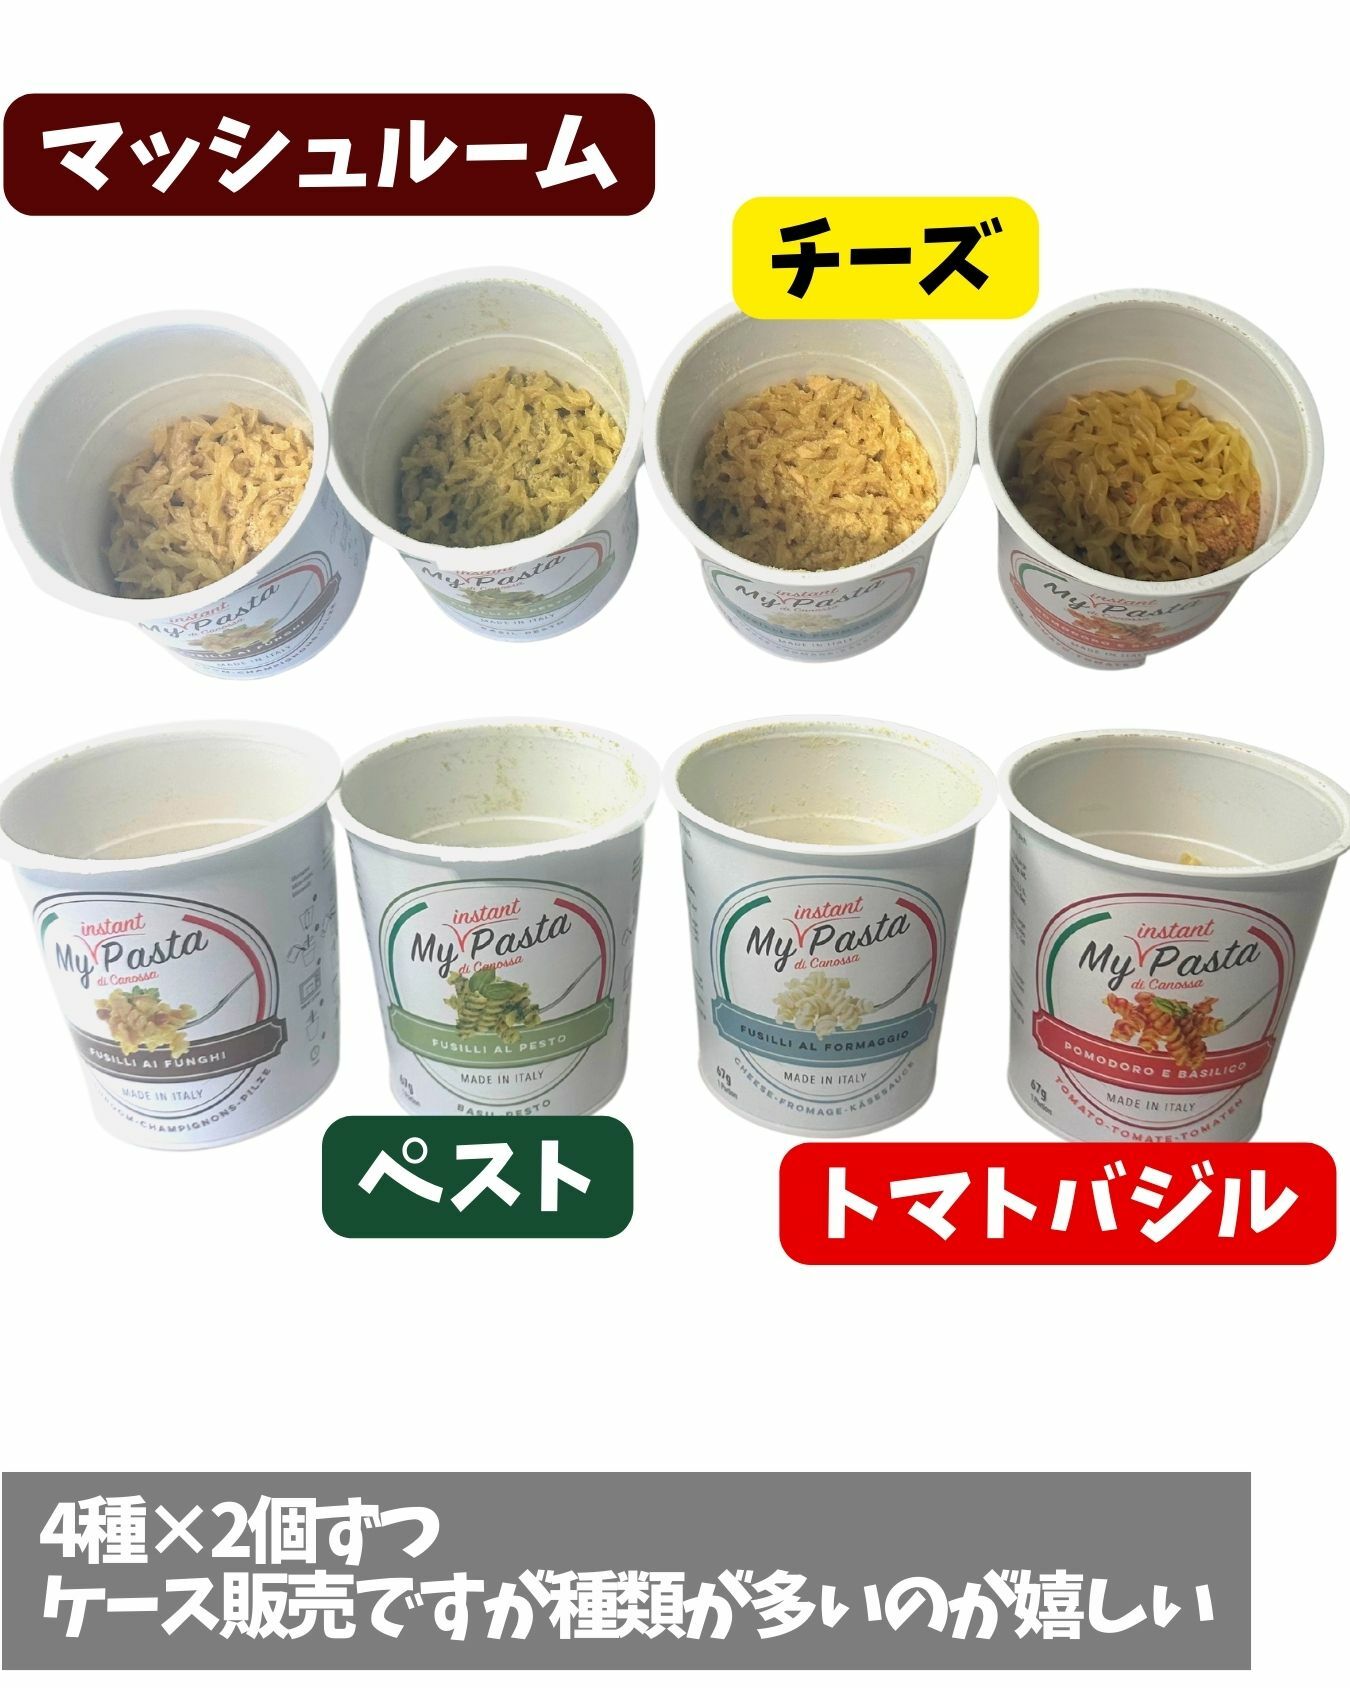 【コストコ】新商品インスタントカップ麺パスタタイプ